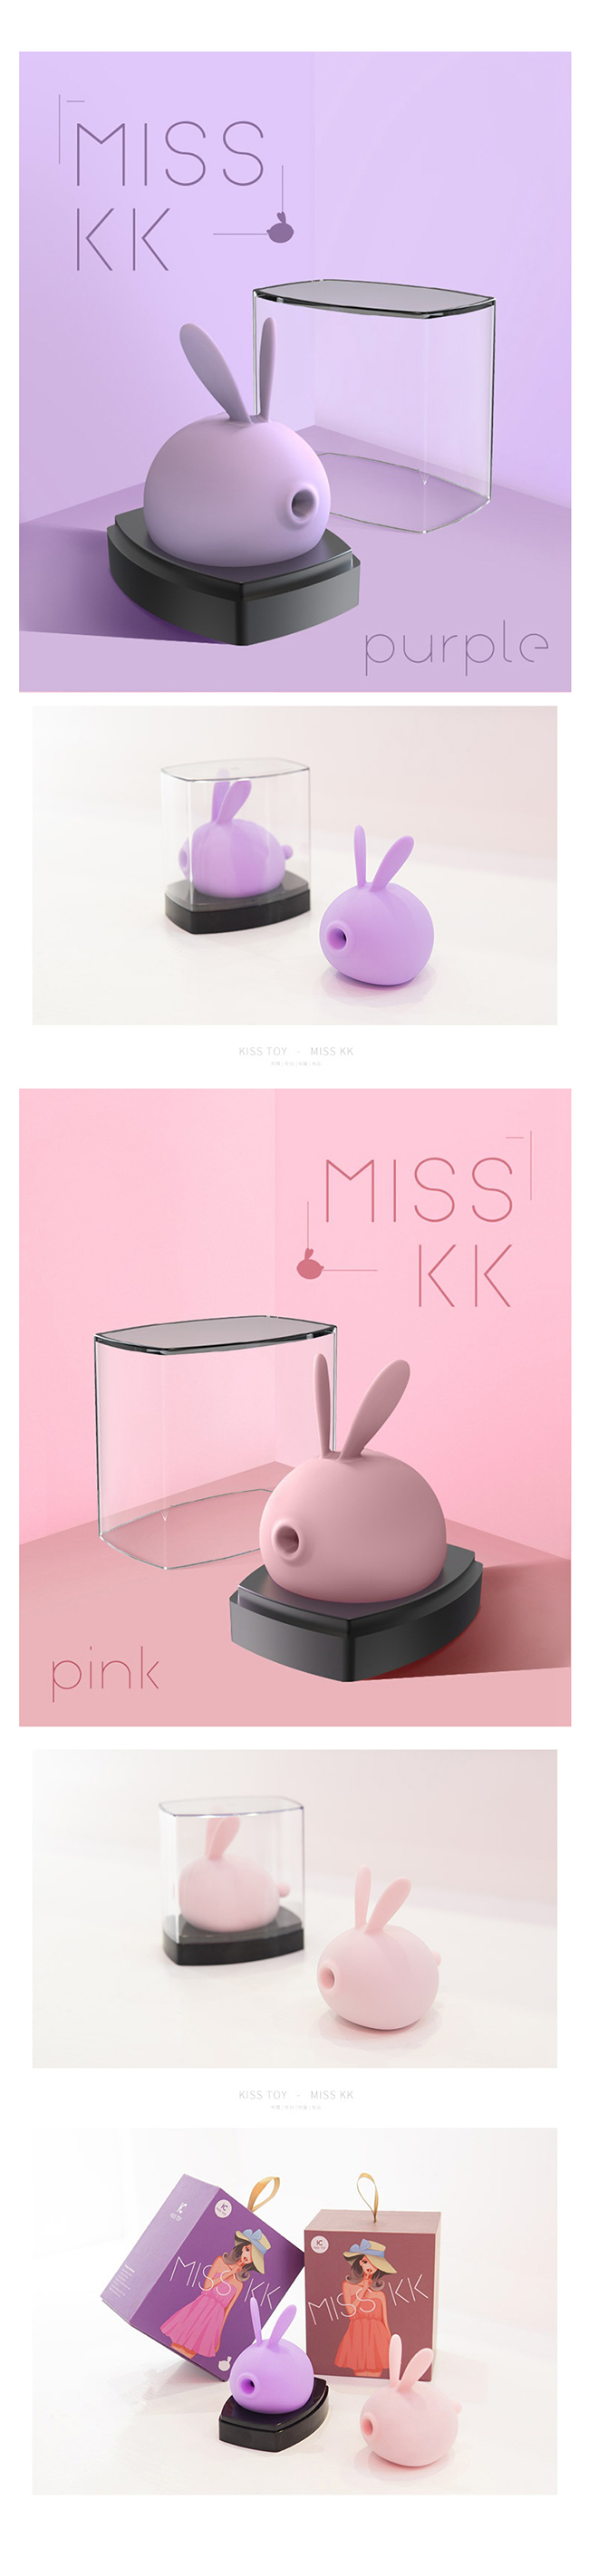 [음속 흡입+진동] 미스 KK(Kisstoy Miss KK) - 키스토이(KST-004)